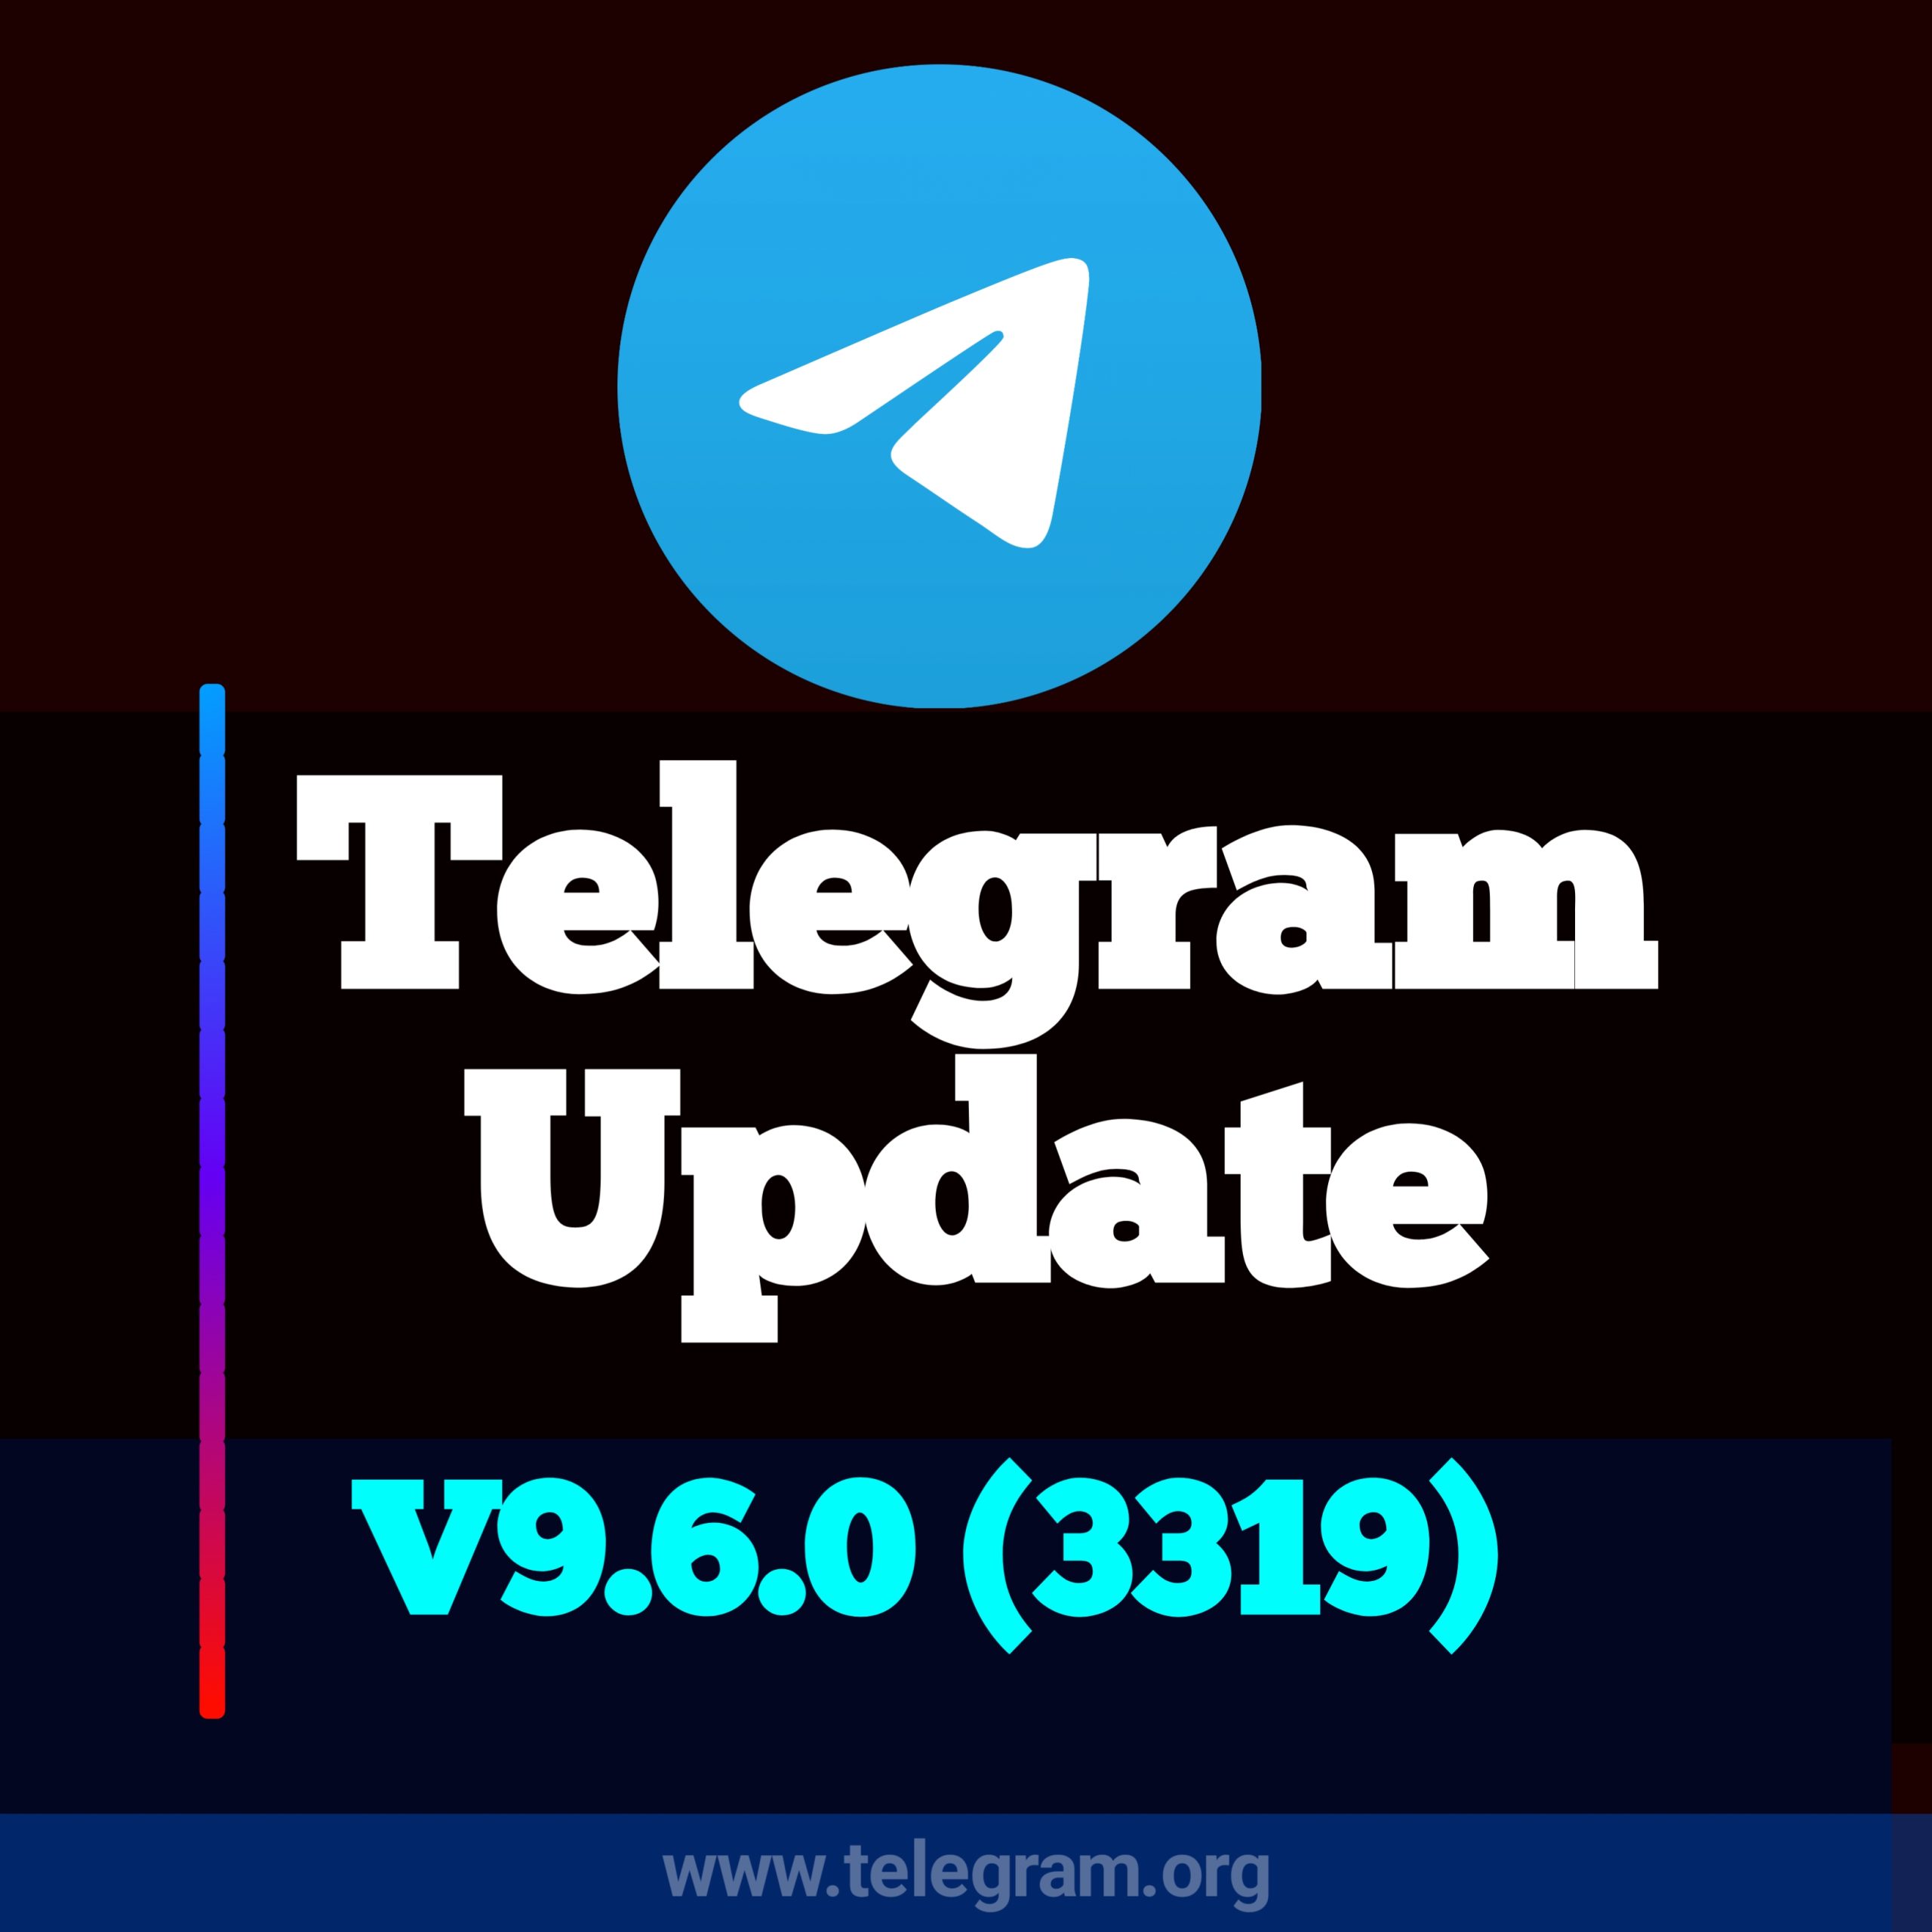 快速、方便的Telegram账号购买指南